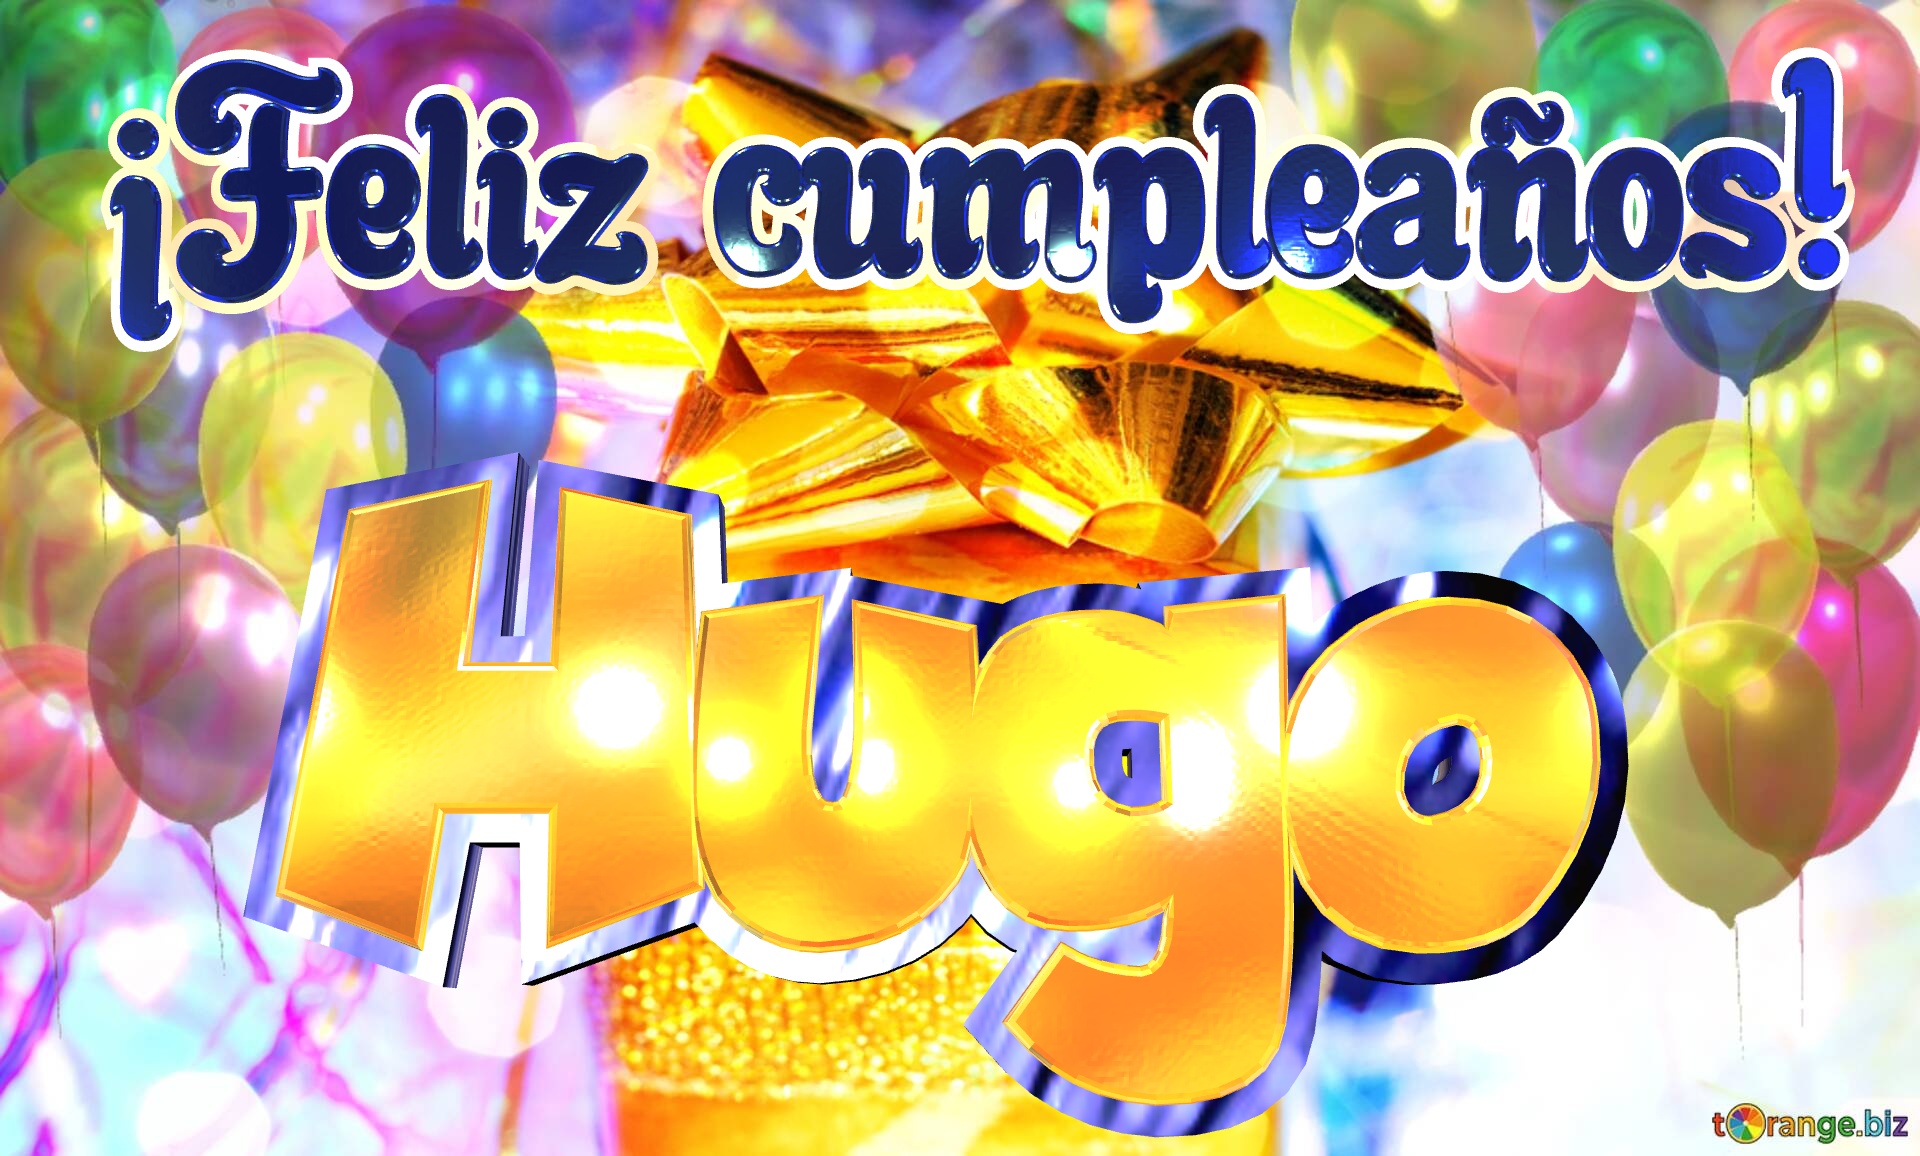 Hugo ¡Feliz cumpleaños! Fondo para felicitaciones por tu cumpleaños. №0